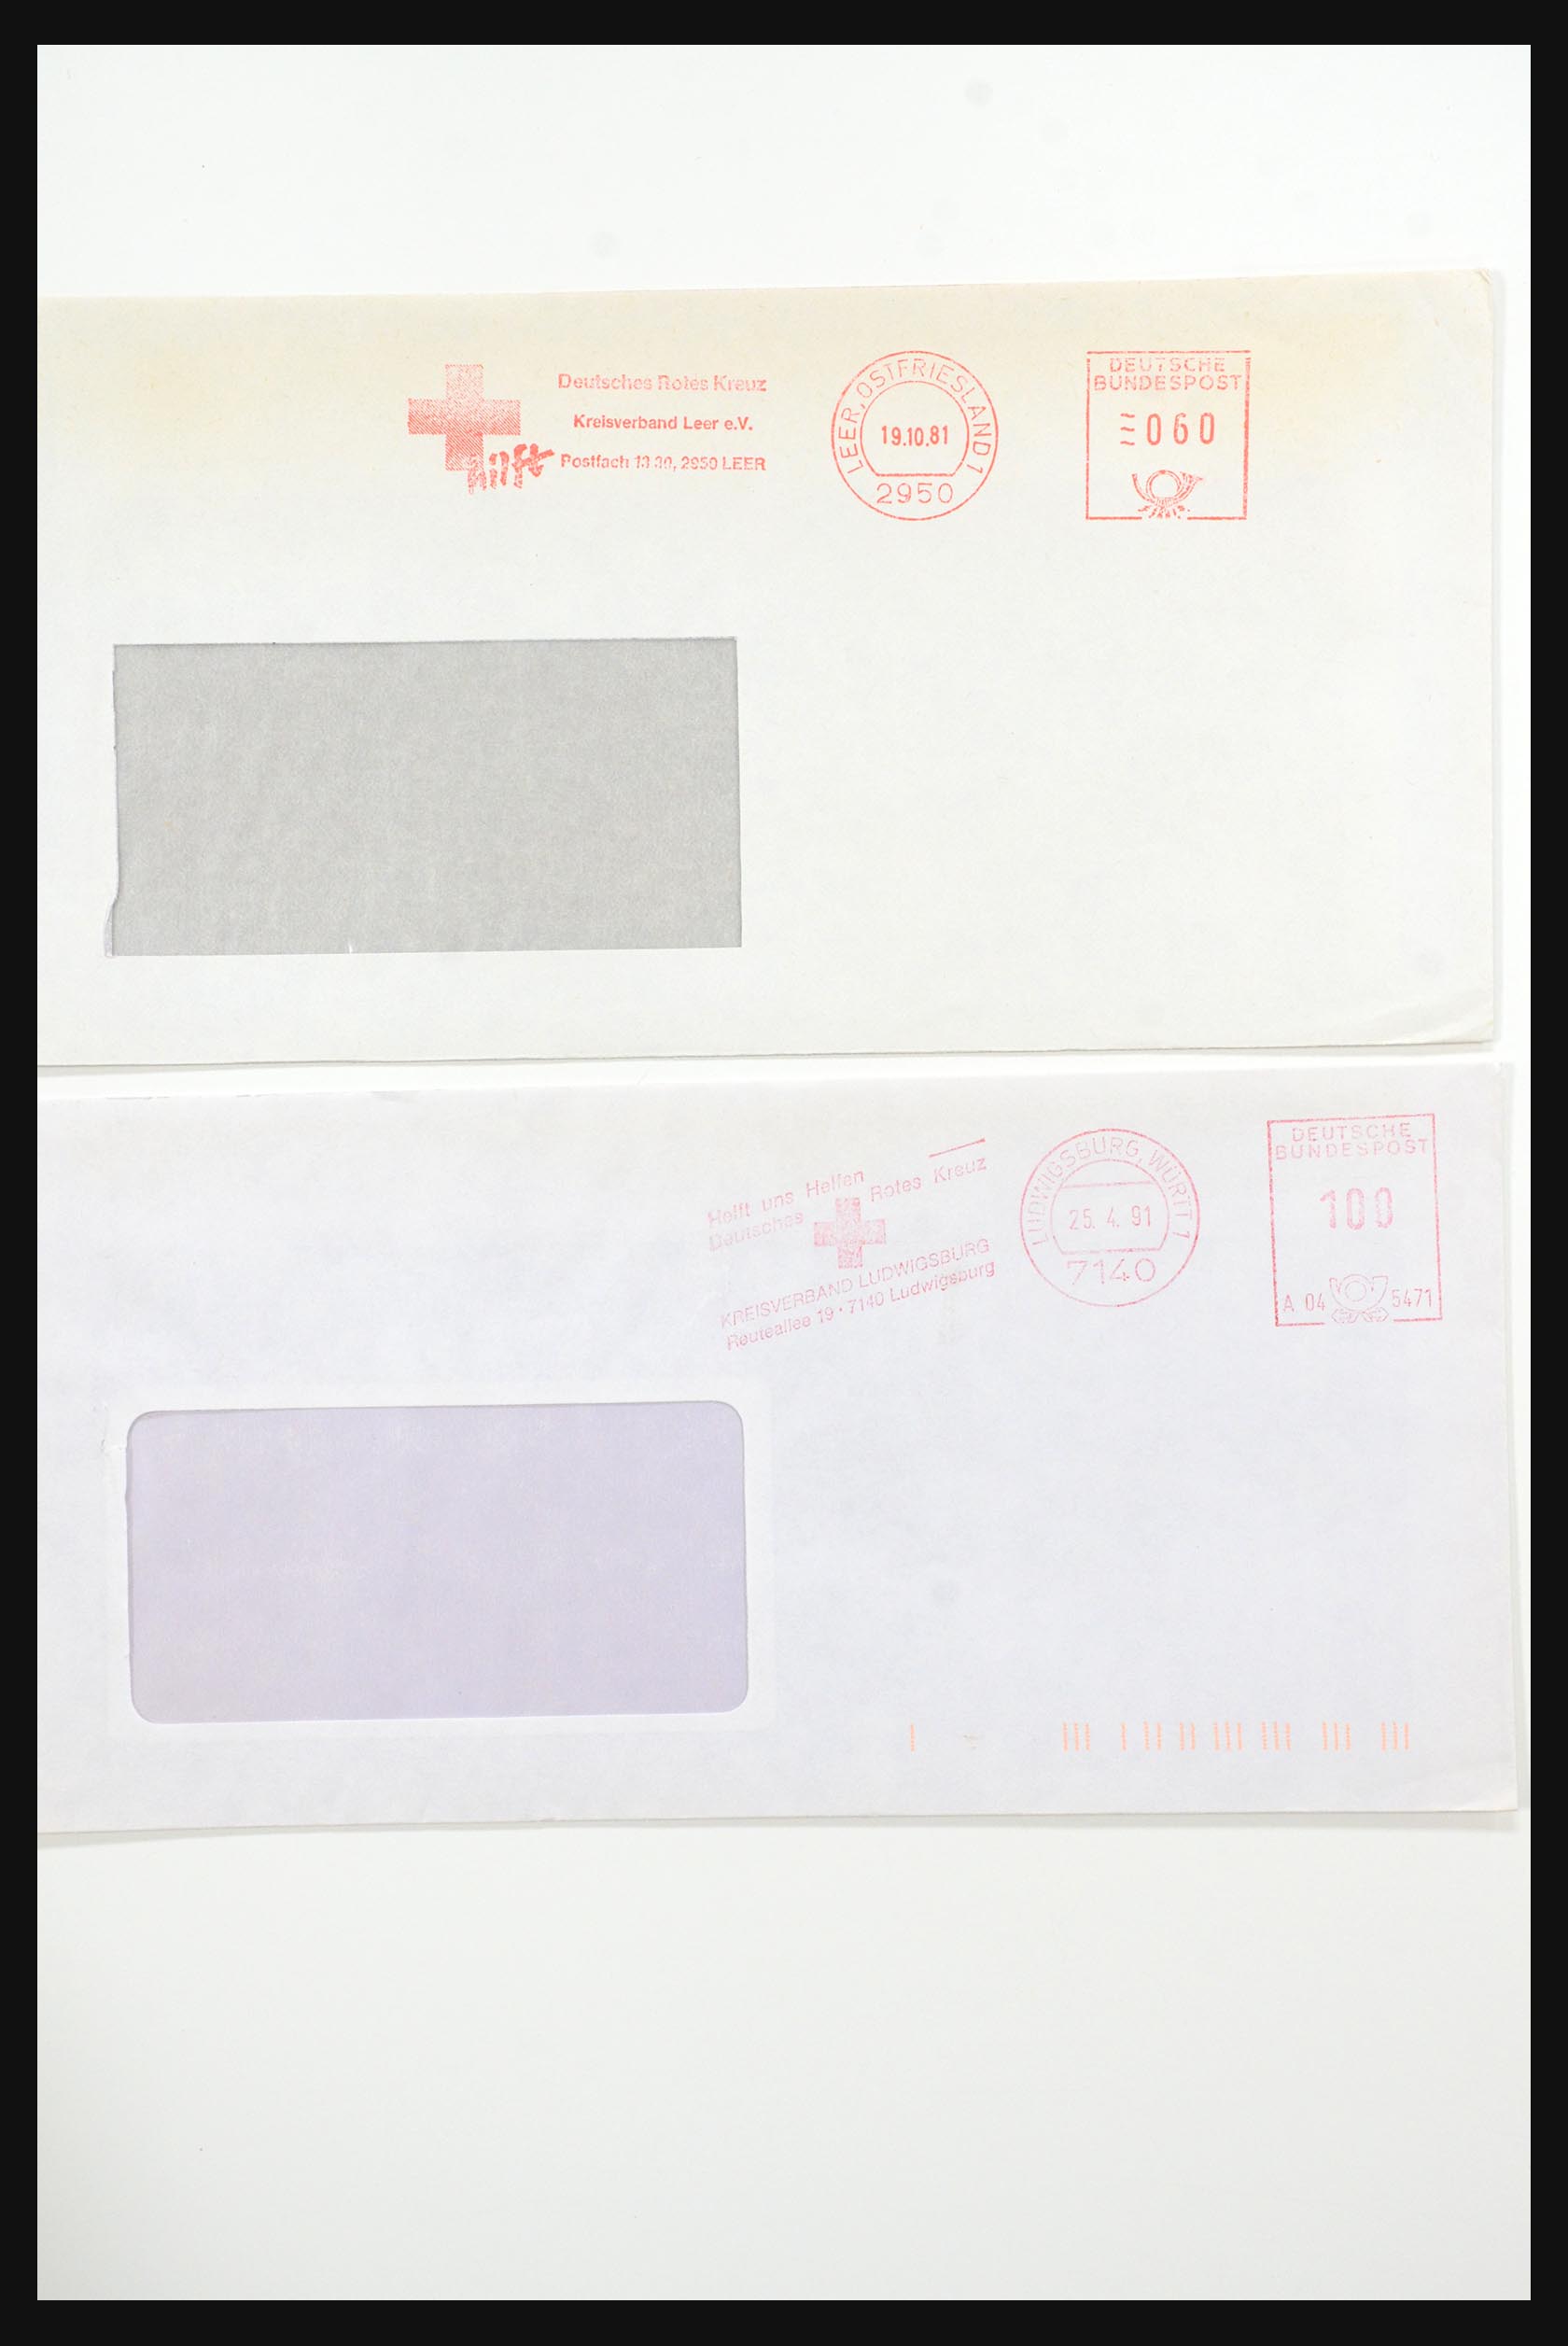 31365 1075 - 31365 Rode kruis brieven 1905-1975.